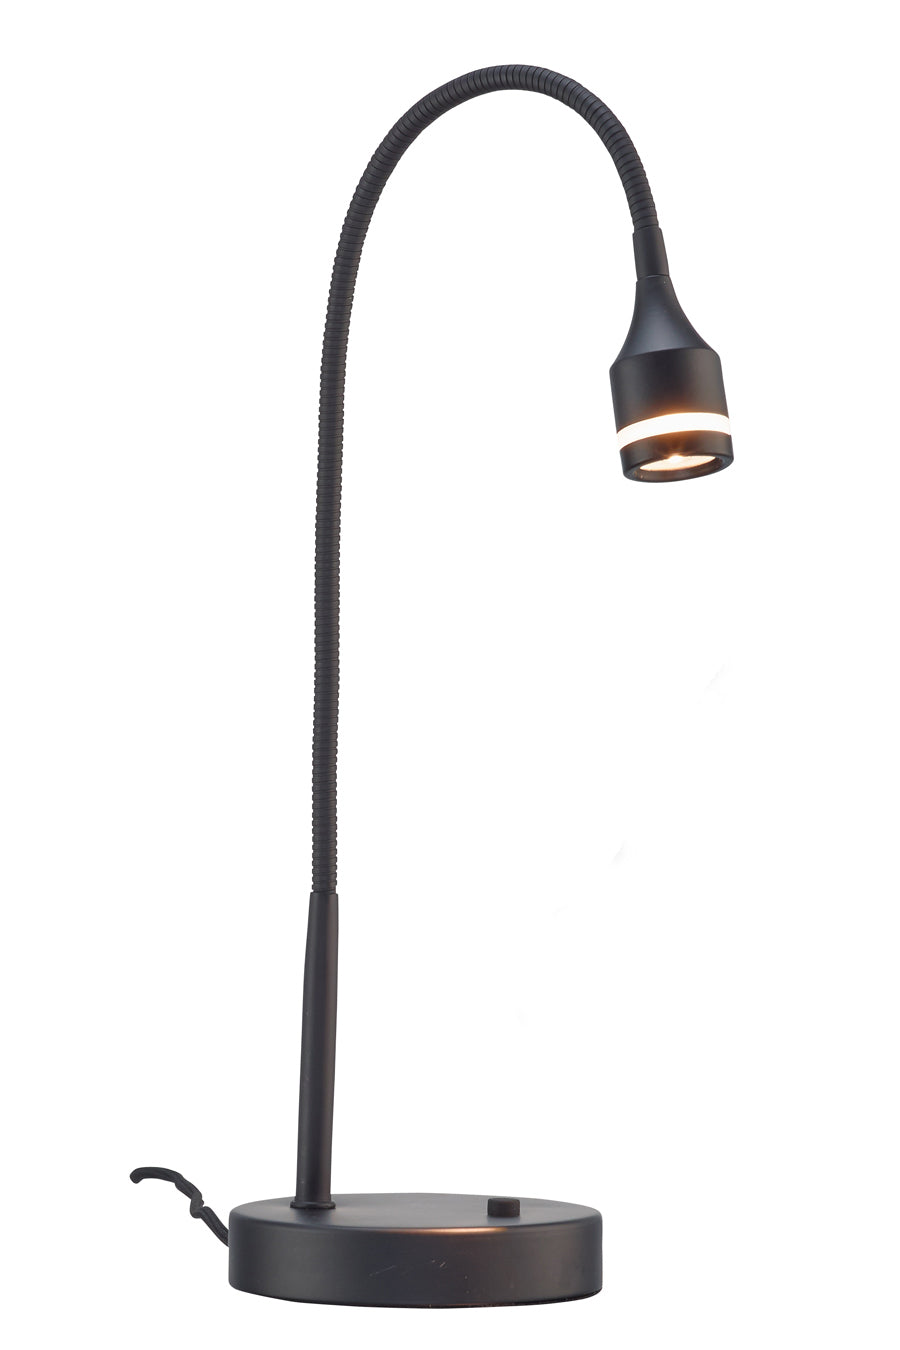 Matte Black Metal LED Adjustable Desk Lamp | Desk Lamps | Modishstore